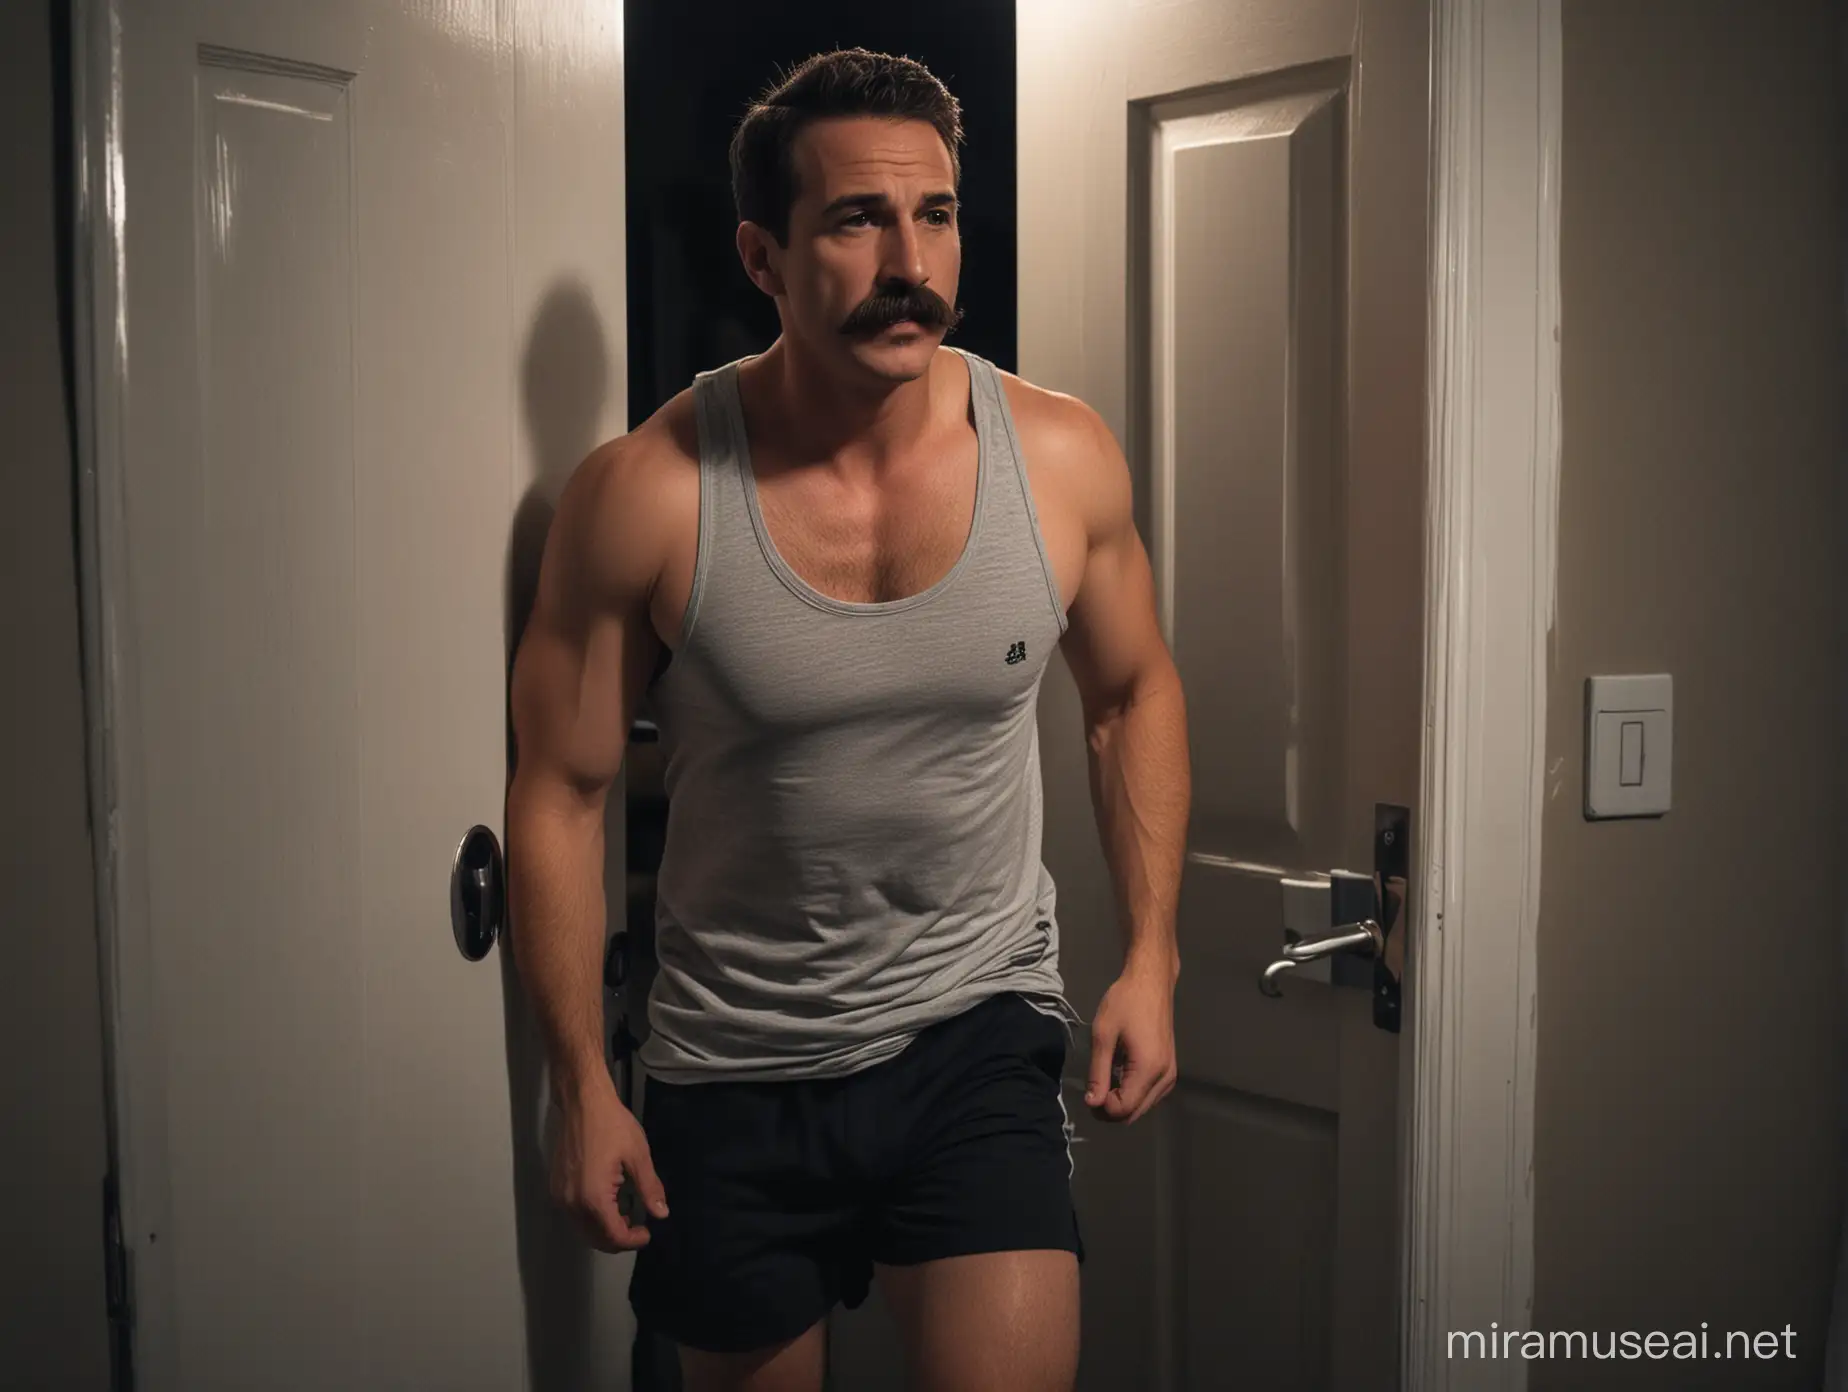 Man with Mustache Opening Dark Bathroom Door at Night